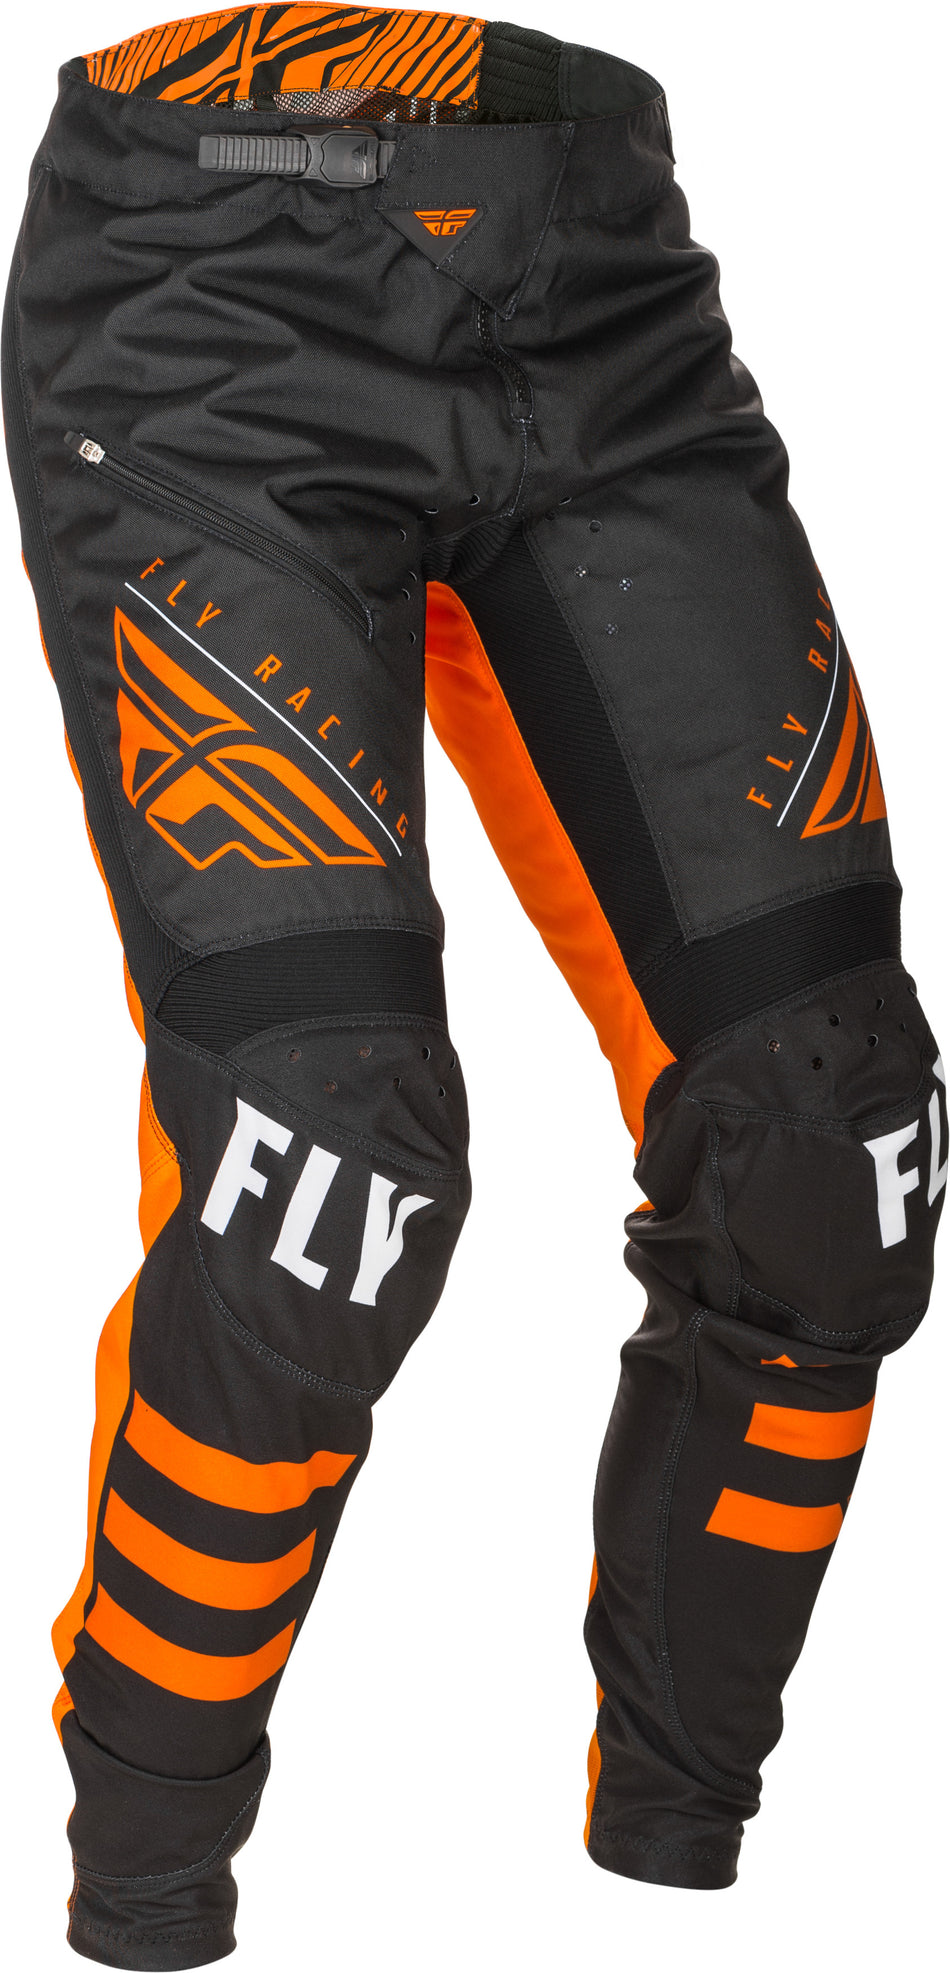 FLY RACING Kinetic Bicycle Pants Black/Orange Sz 20 373-04720